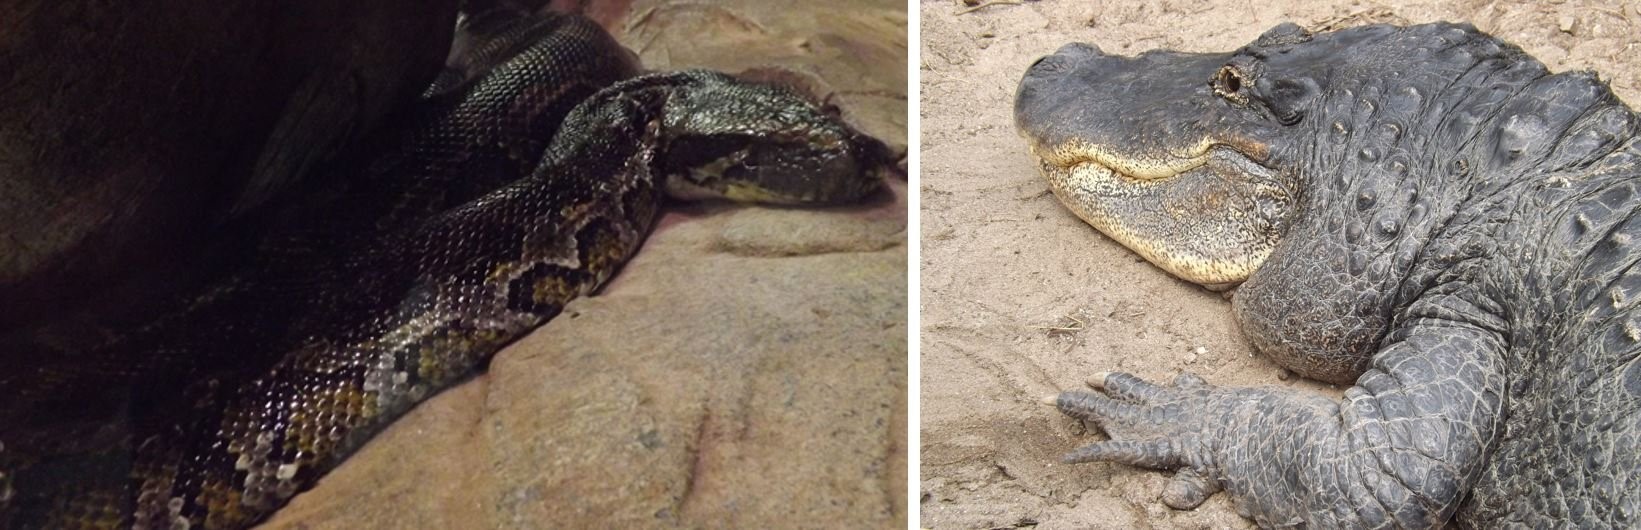 Pythons und Alligatoren, sind Dinosauriern nicht besonders ähnlich